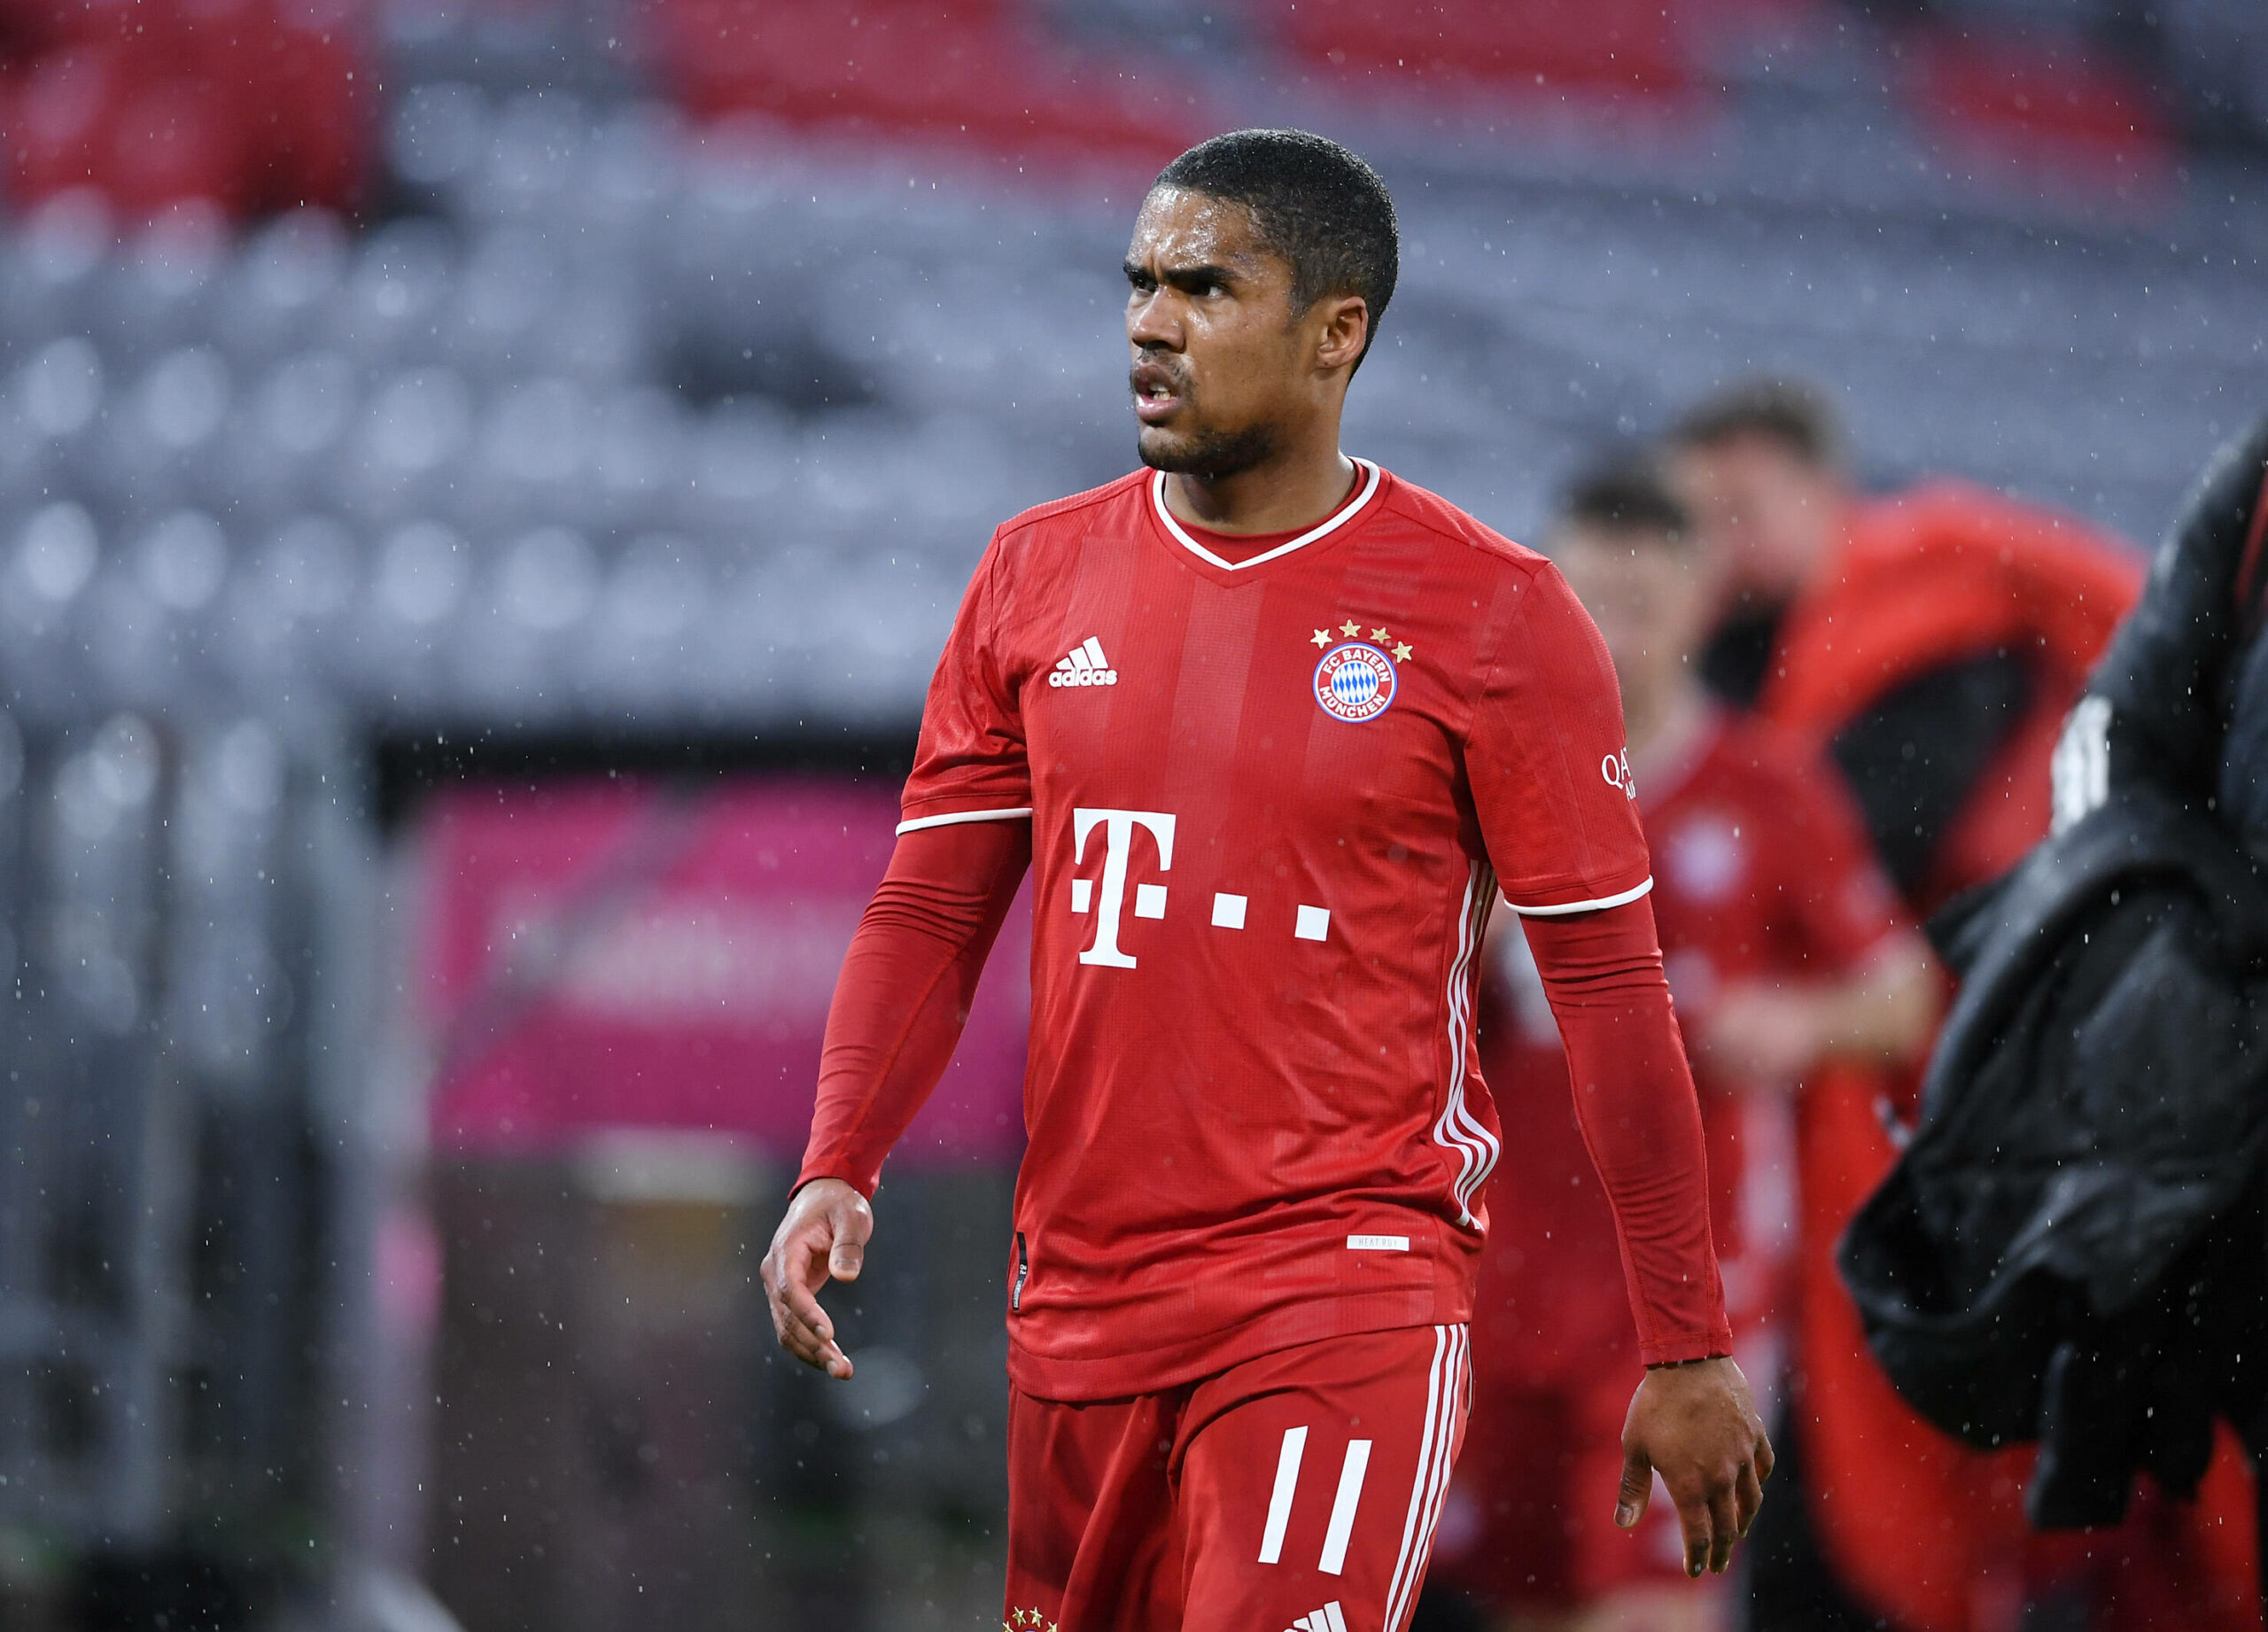 FC Bayern | Saisonaus für Douglas Costa – Boateng bricht Training ab